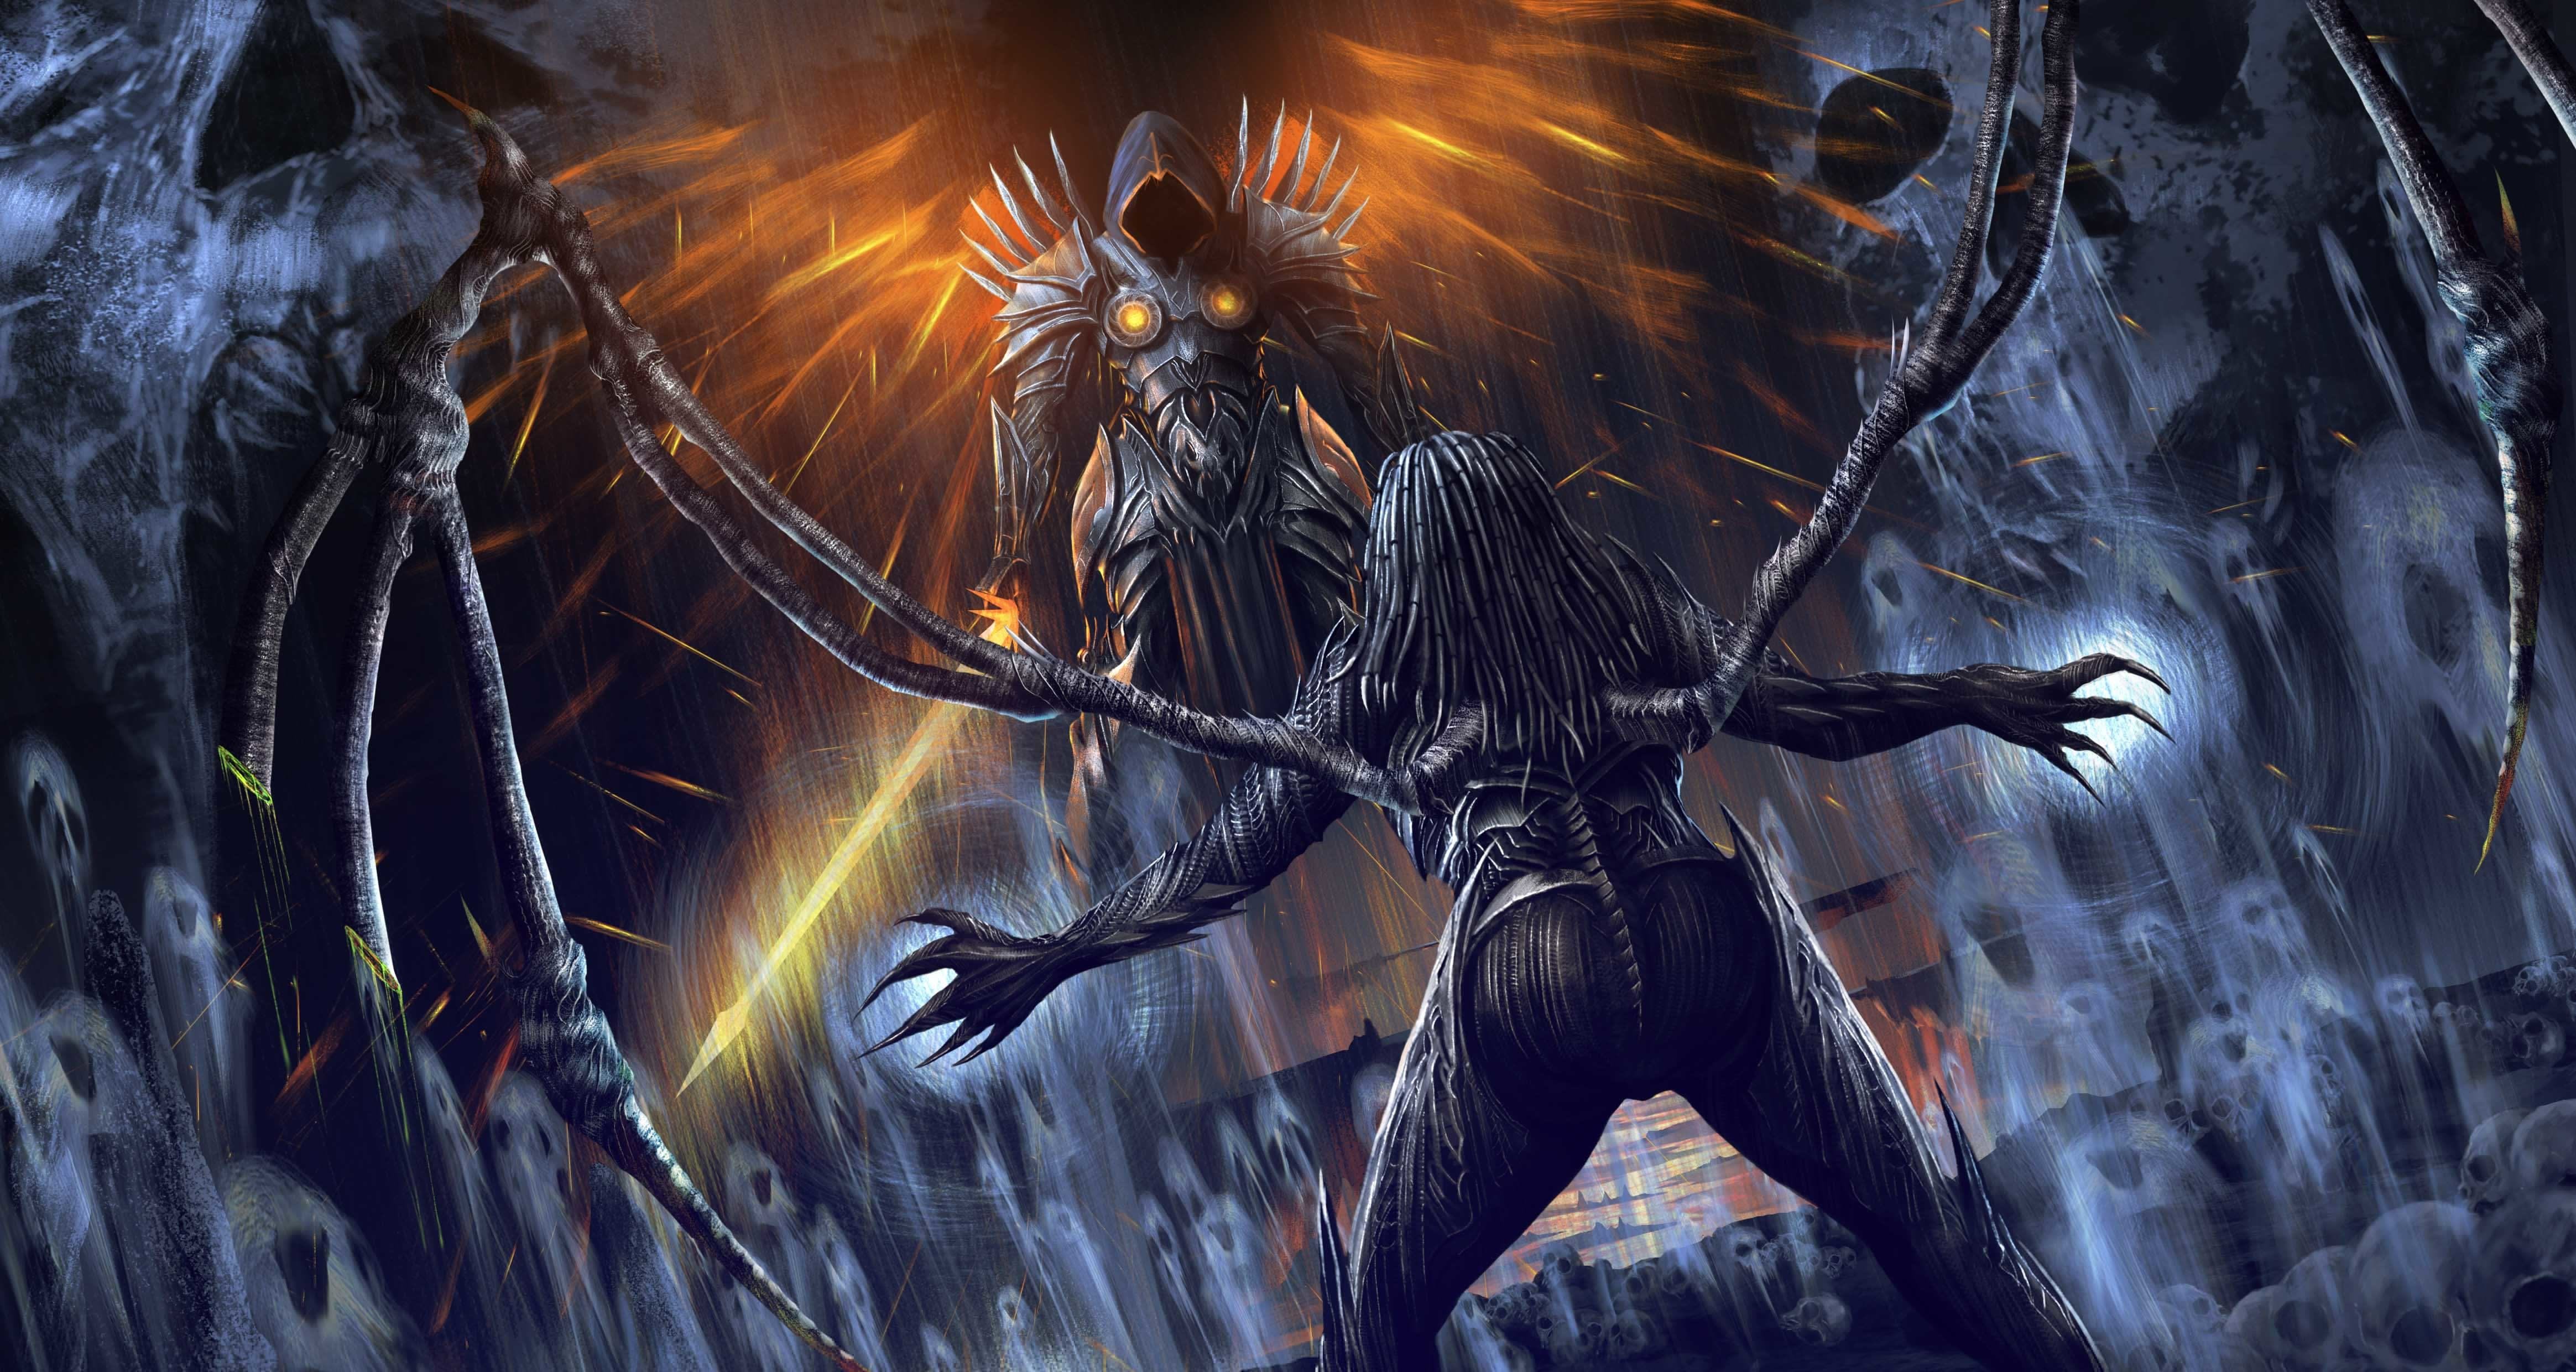 General 4658x2480 fantasy art fantasy girl video games Diablo Diablo III Sarah Kerrigan Tyreal sword claws video game art PC gaming